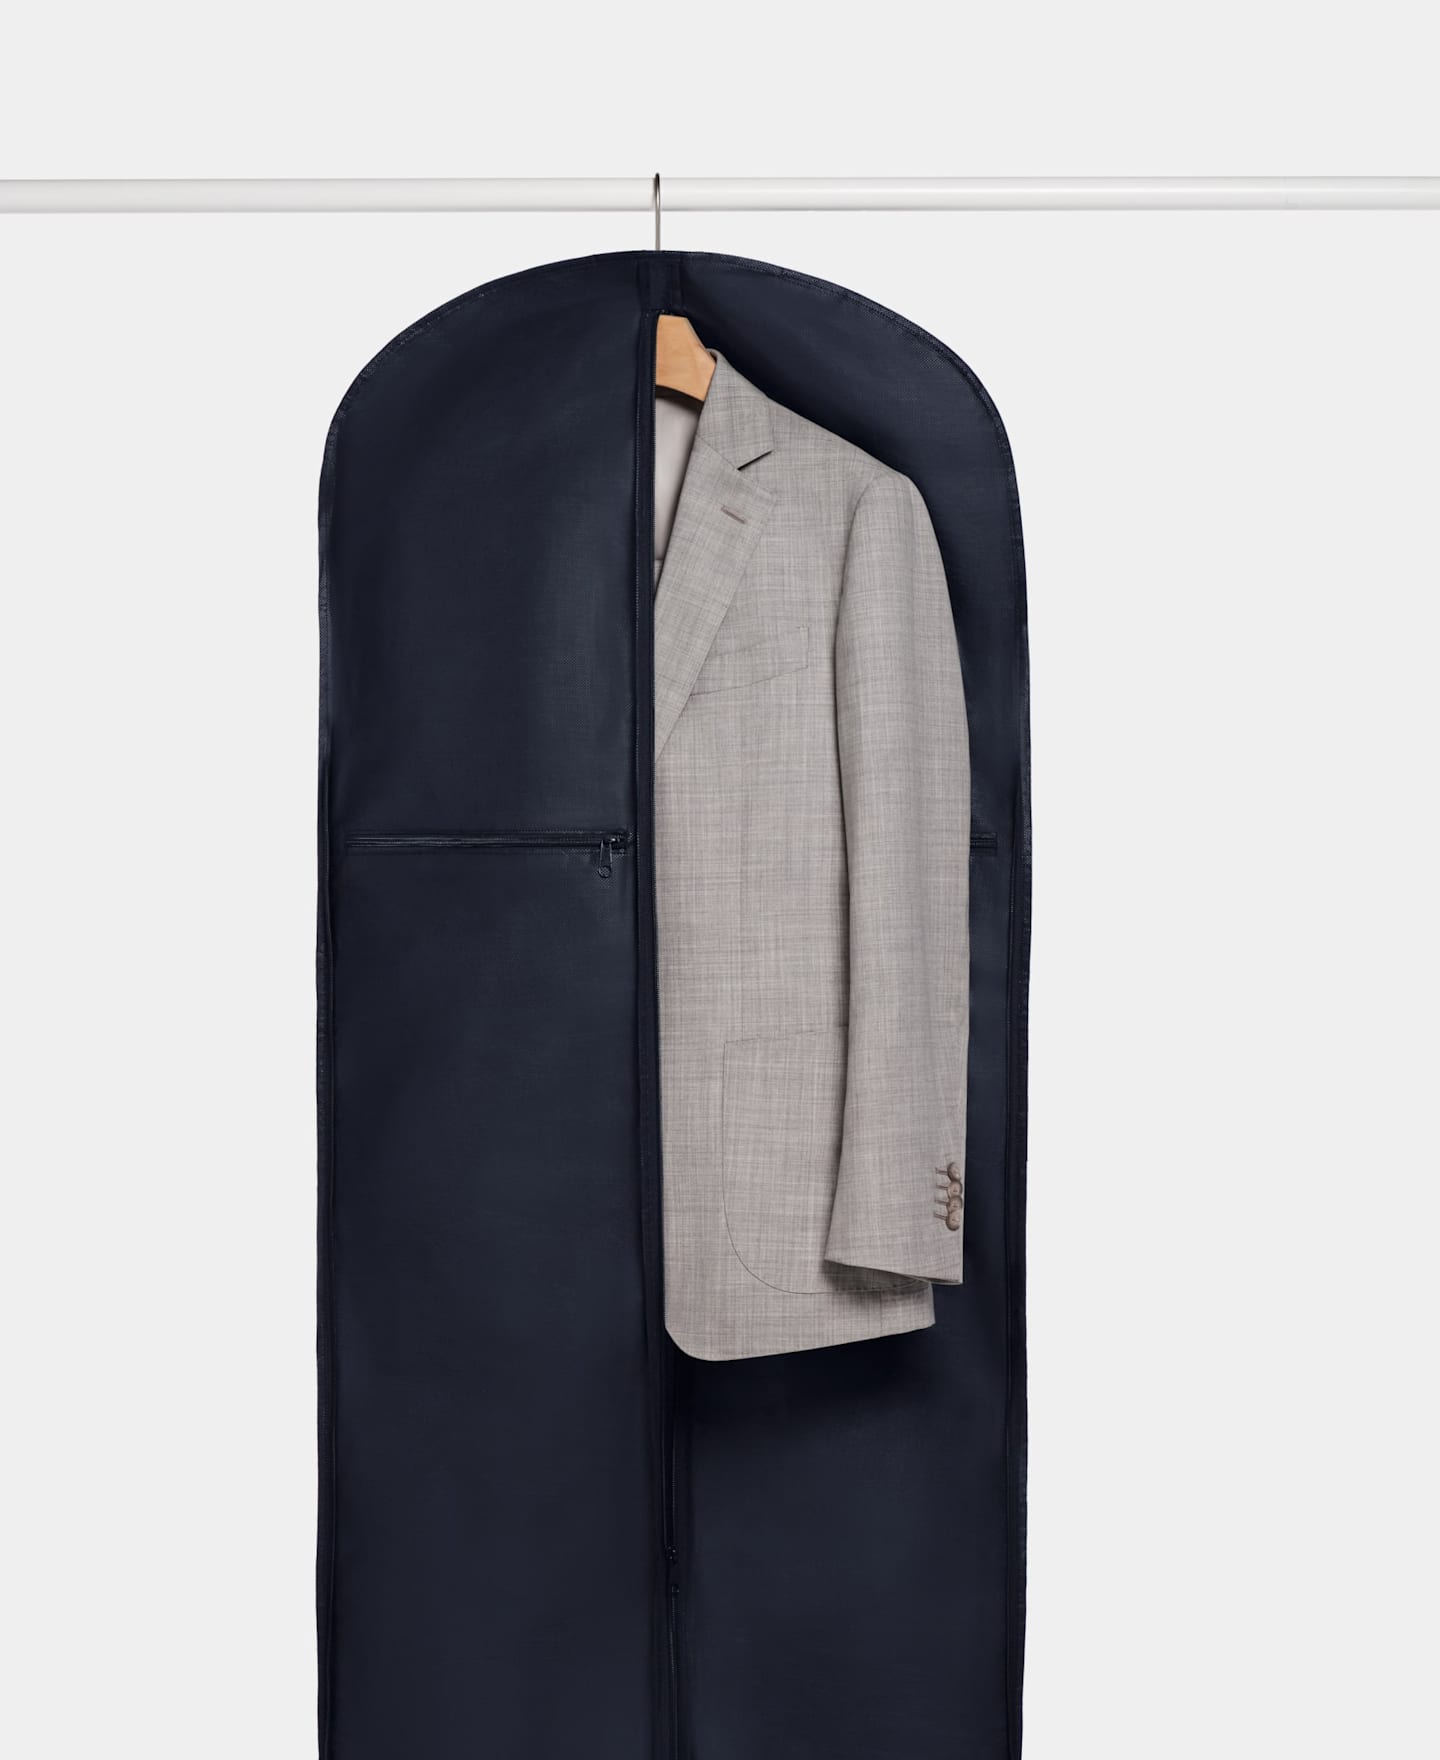 Hellgraues Anzugsakko, verpackt in einem blauen Kleidersack